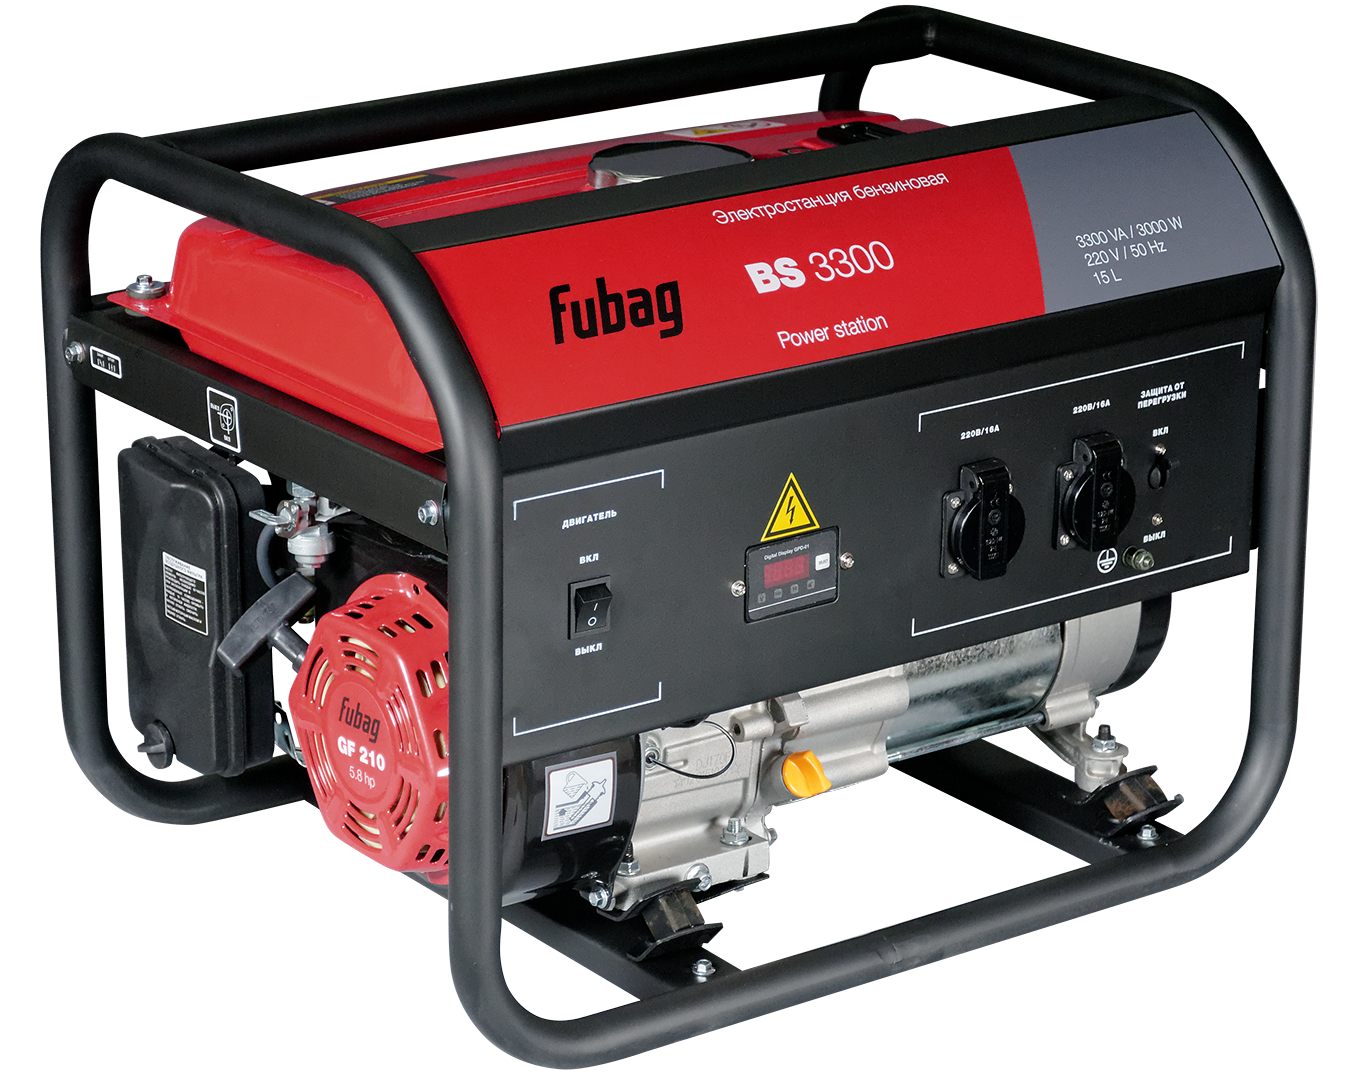  генератор Fubag BS 3300 -  со скидкой, цена, описание .